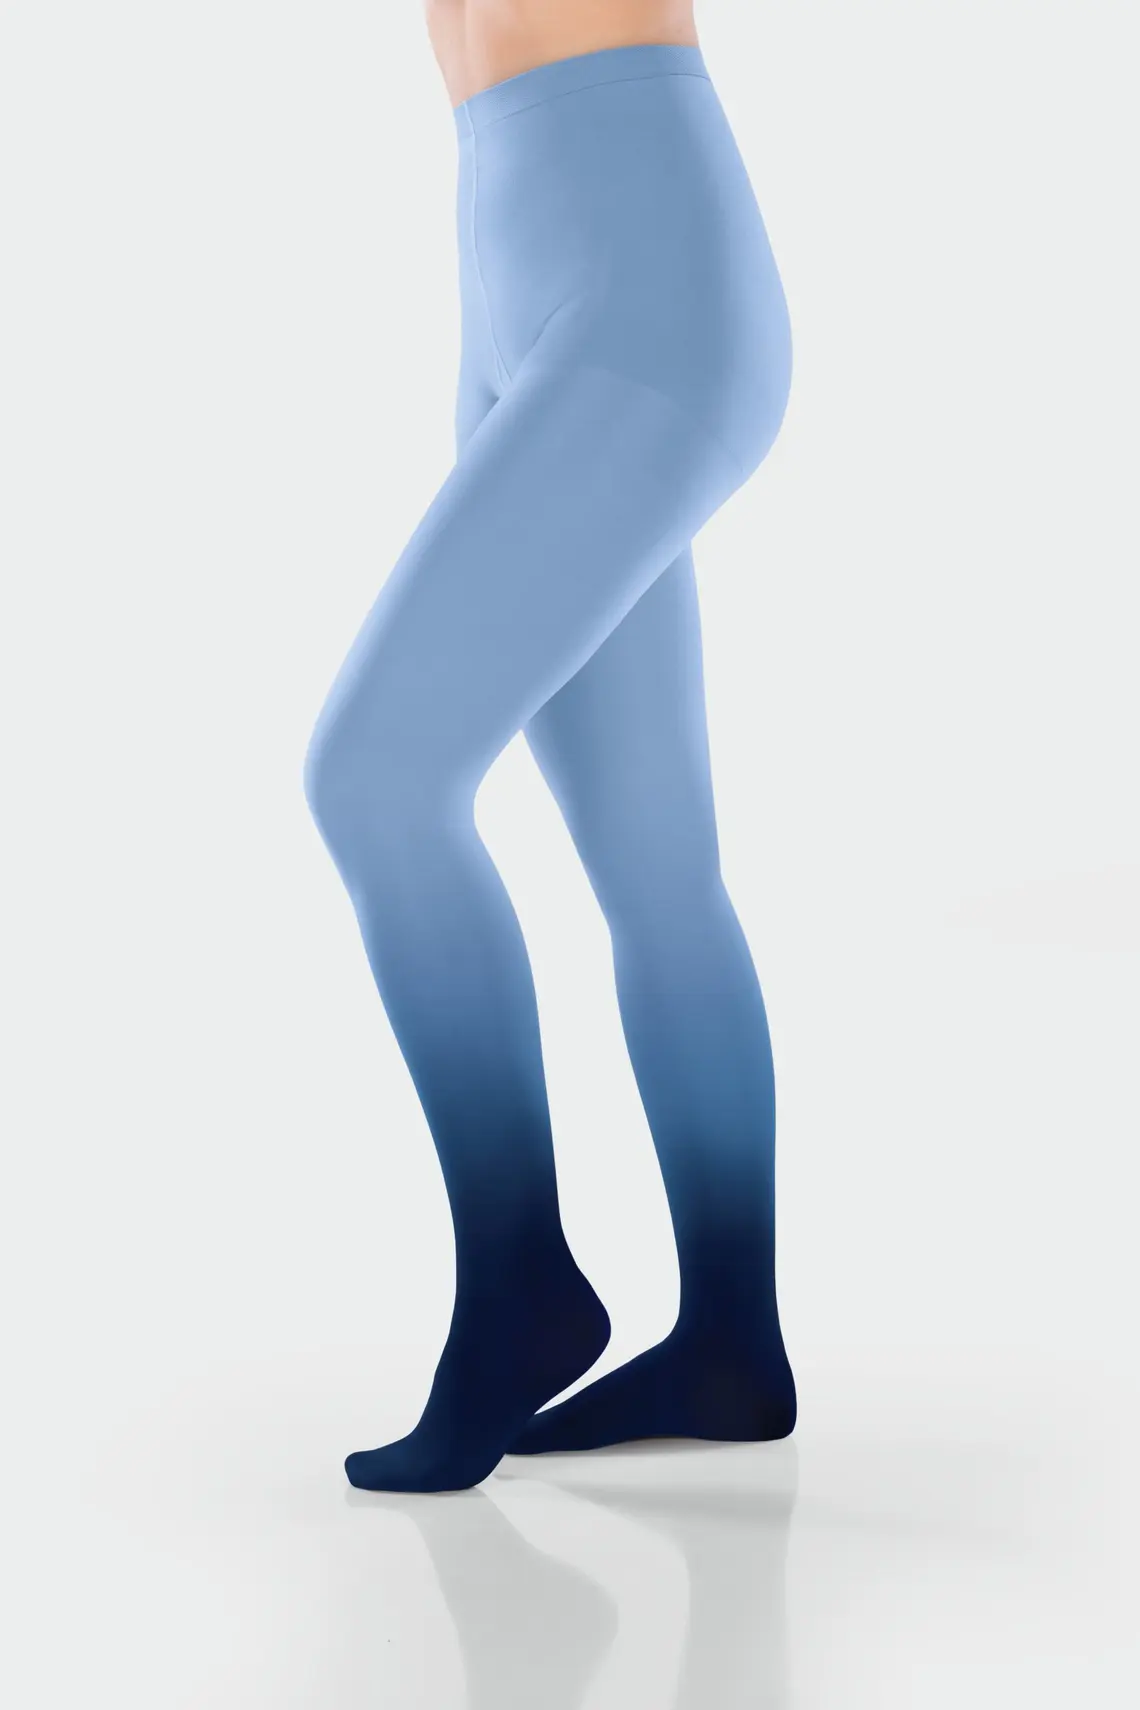 Чорапогащи за паякообразни и разширени вени, тромбози и при отоци в краката - дамски - високи - преливащо сини